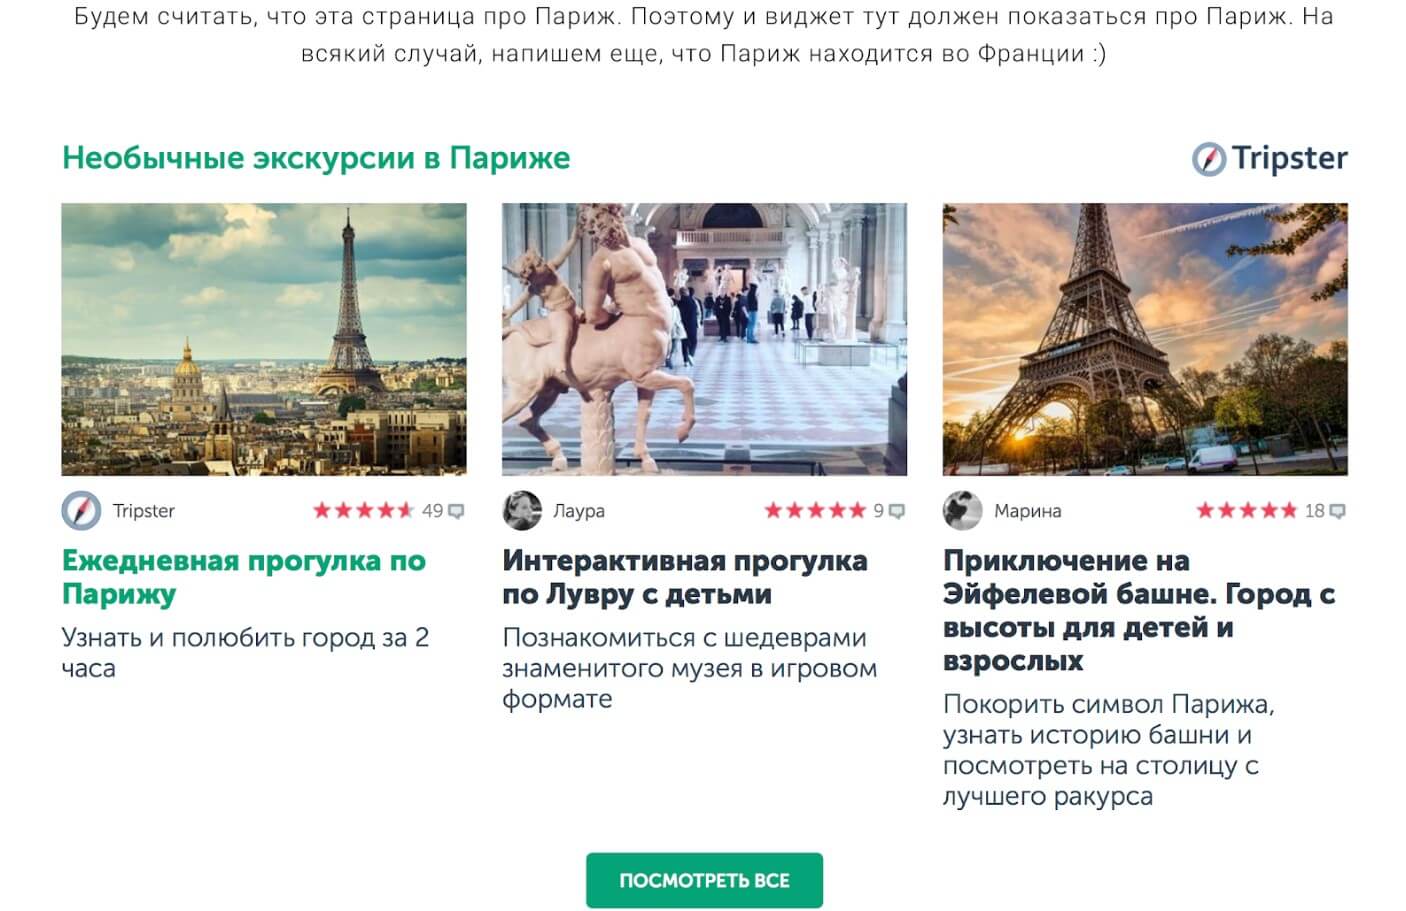 Как заработать на бронировании экскурсий вместе с Tripster.ru